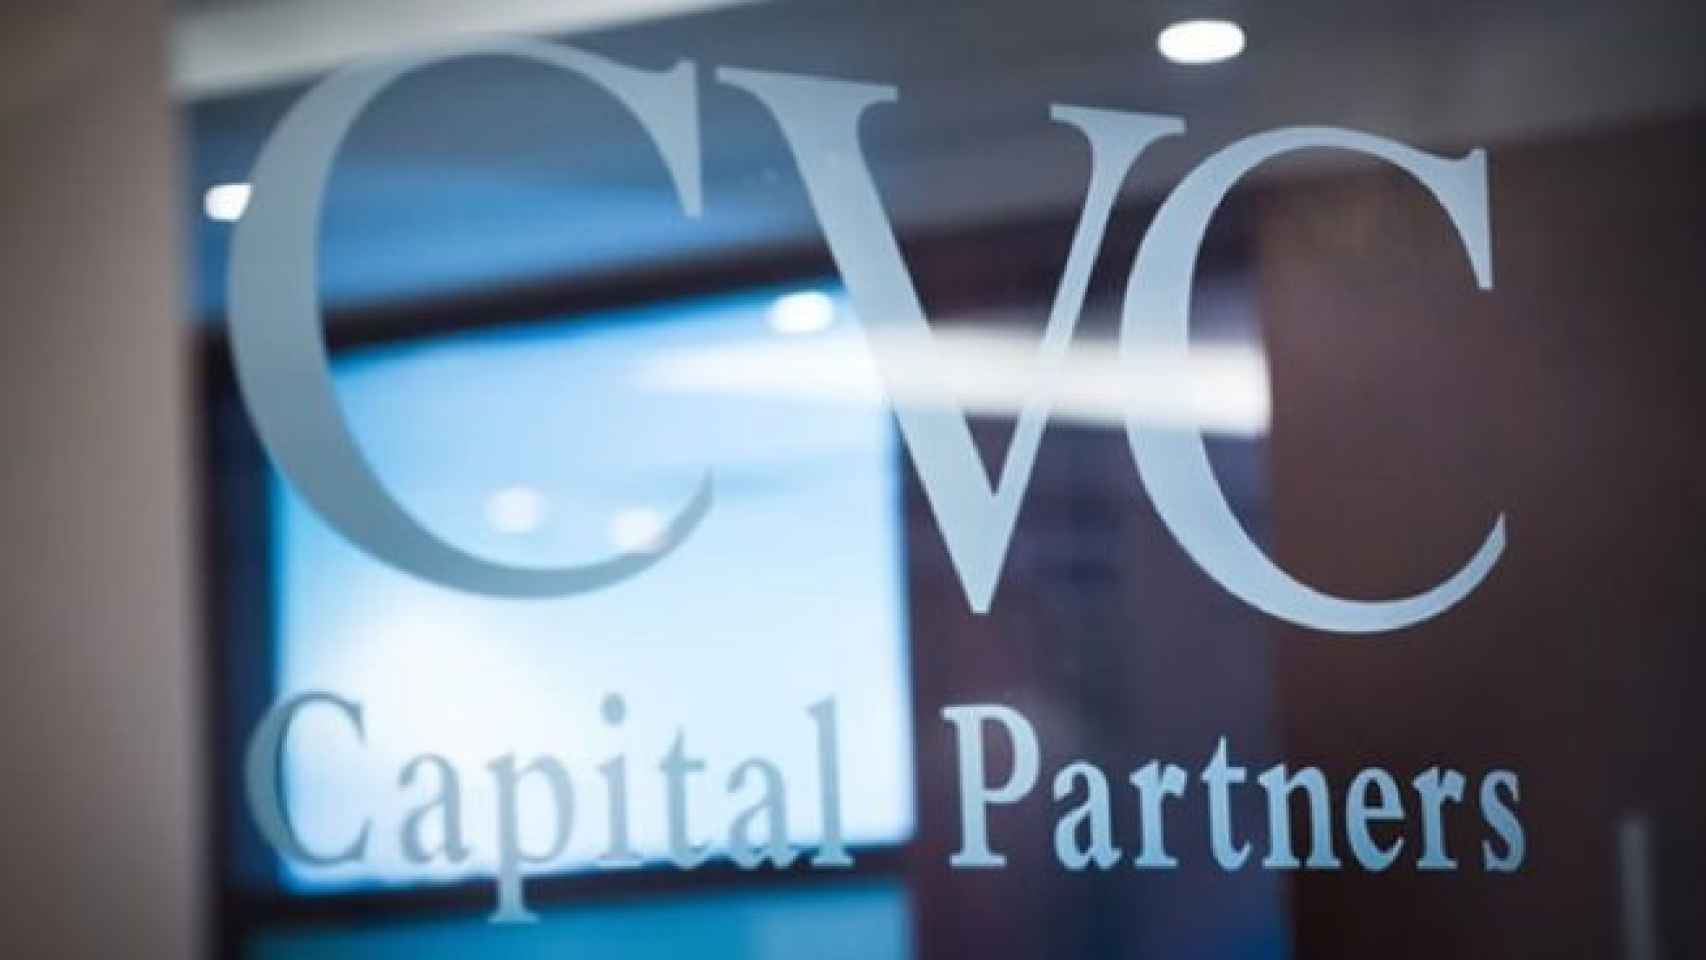 cvc-capital-partners-655x368